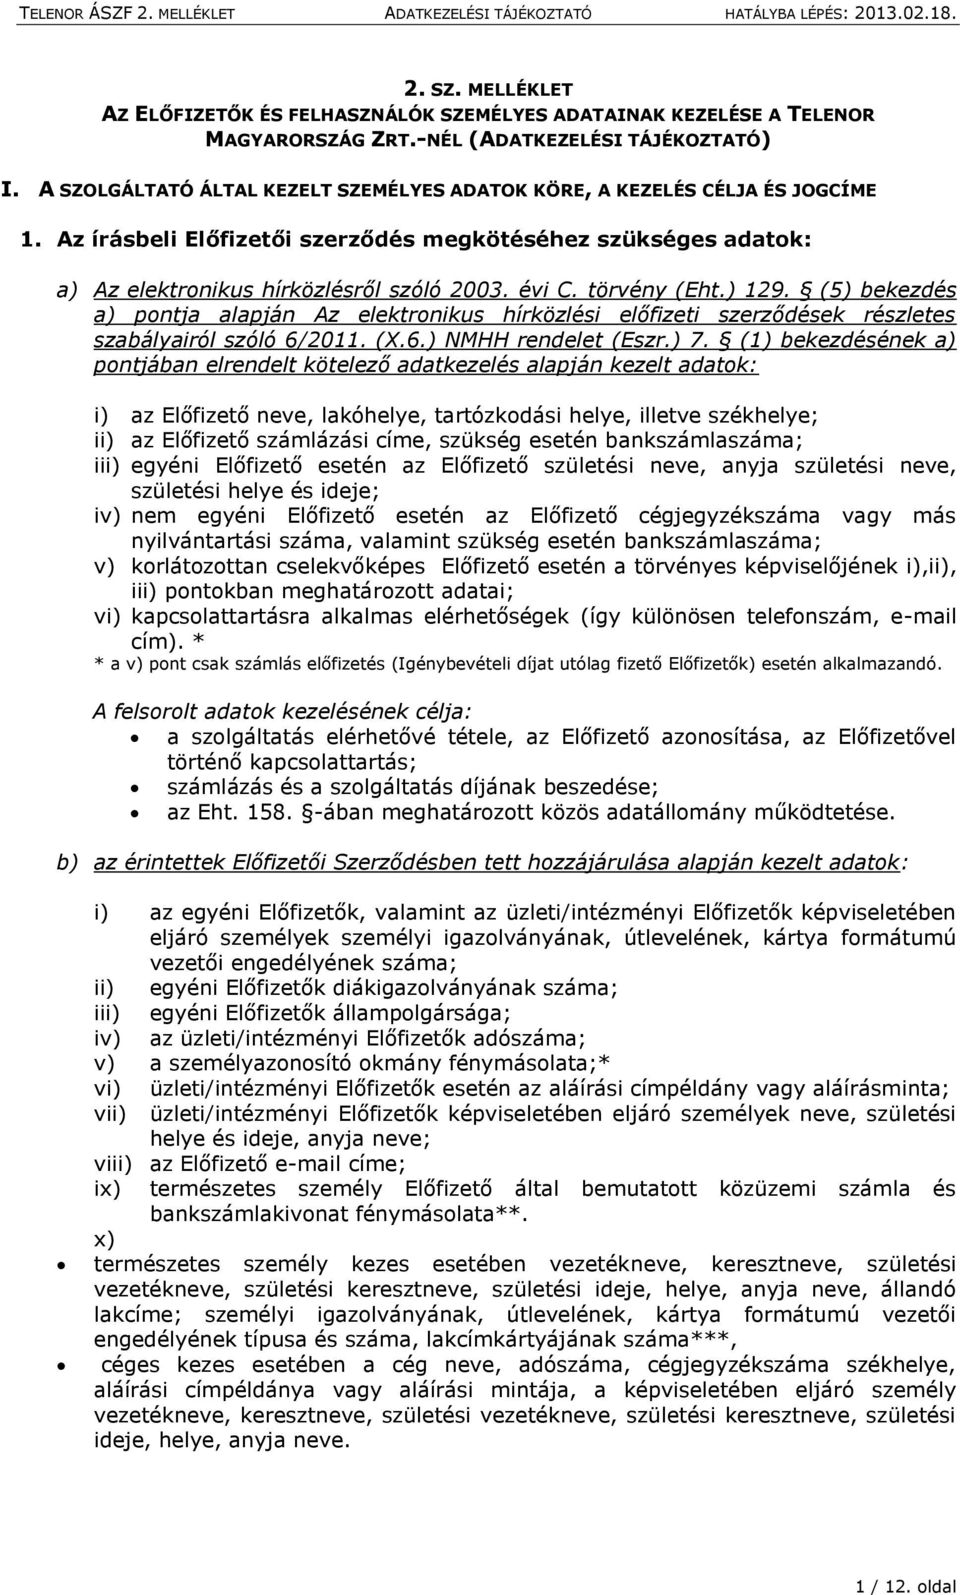 törvény (Eht.) 129. (5) bekezdés a) pontja alapján Az elektronikus hírközlési előfizeti szerződések részletes szabályairól szóló 6/2011. (X.6.) NMHH rendelet (Eszr.) 7.